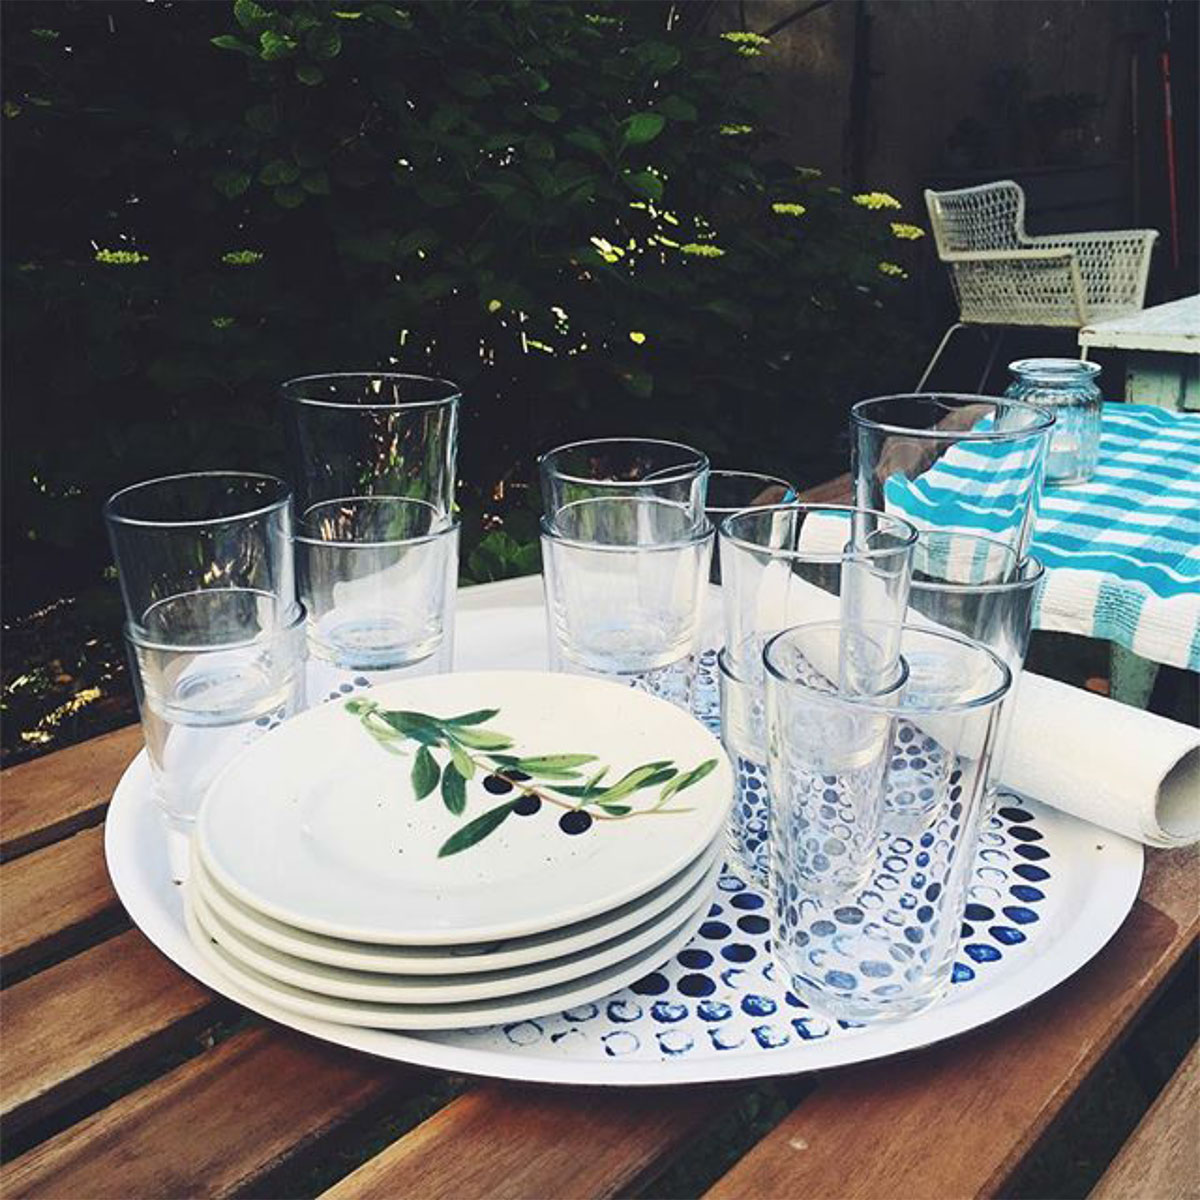 Teller und Gläser auf einem Tablett auf einem Gartentisch